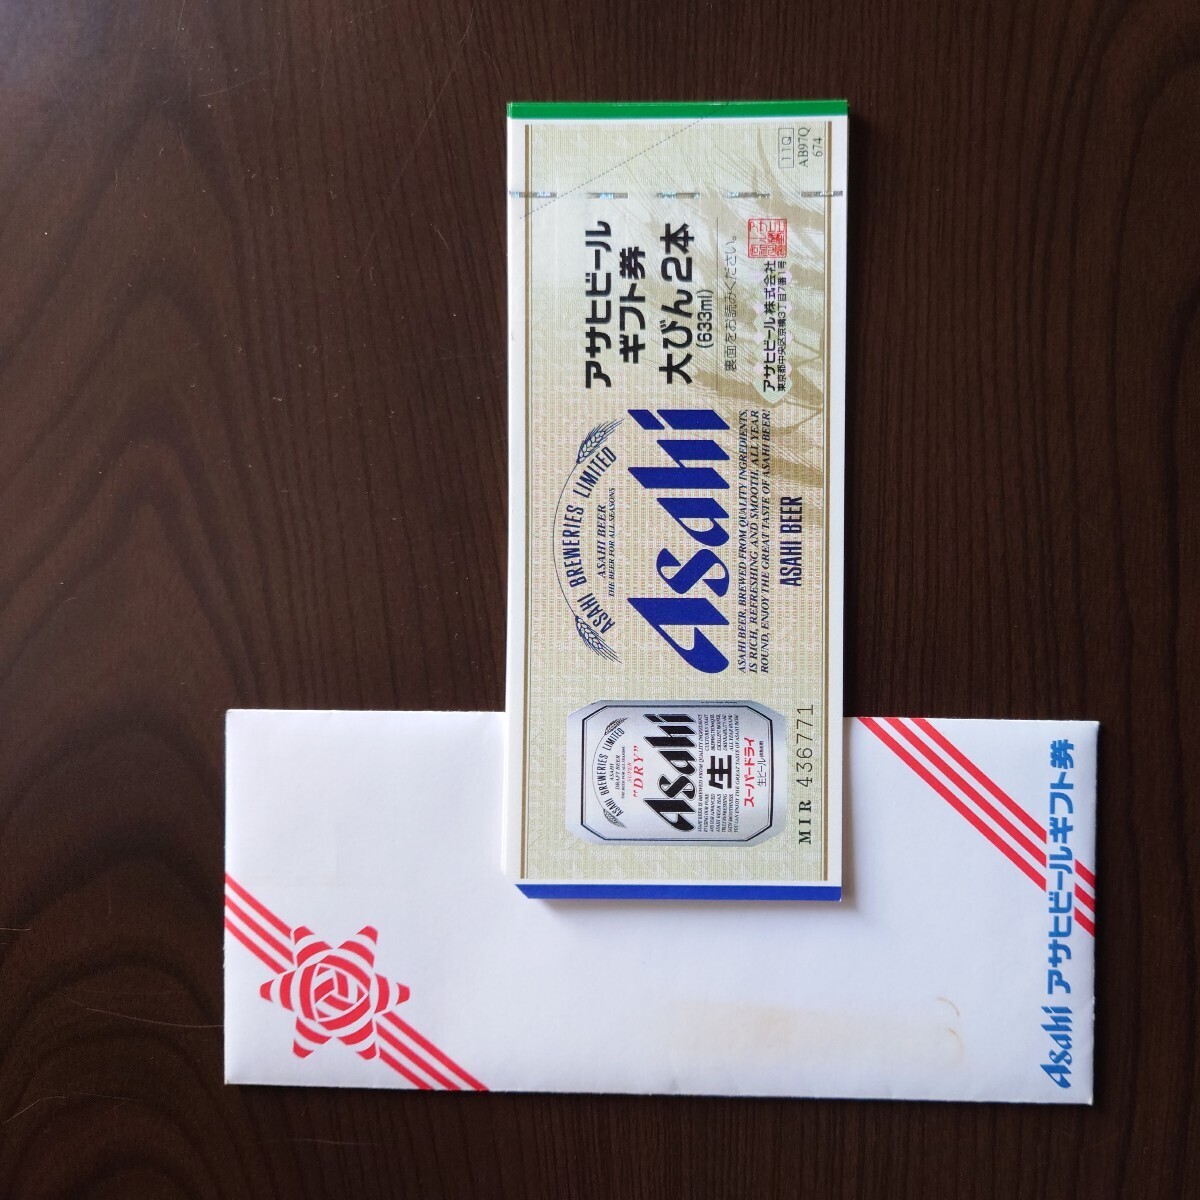  Asahi пиво подарочный сертификат большой бутылка 2 шт ×10 листов (20 минут )[ бесплатная доставка ]